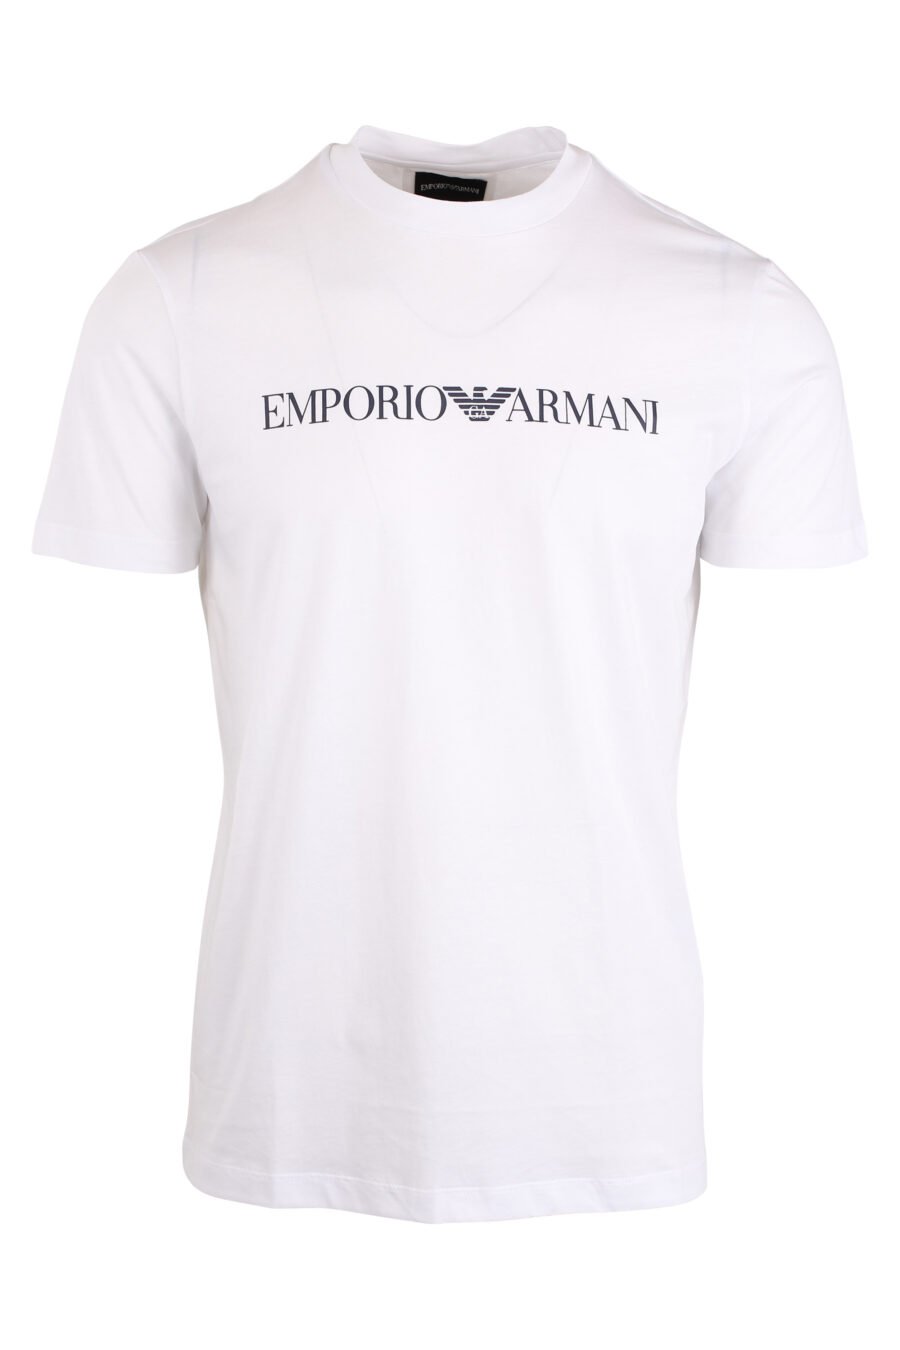 Weißes T-Shirt mit schwarzem Schriftzug - IMG 4271